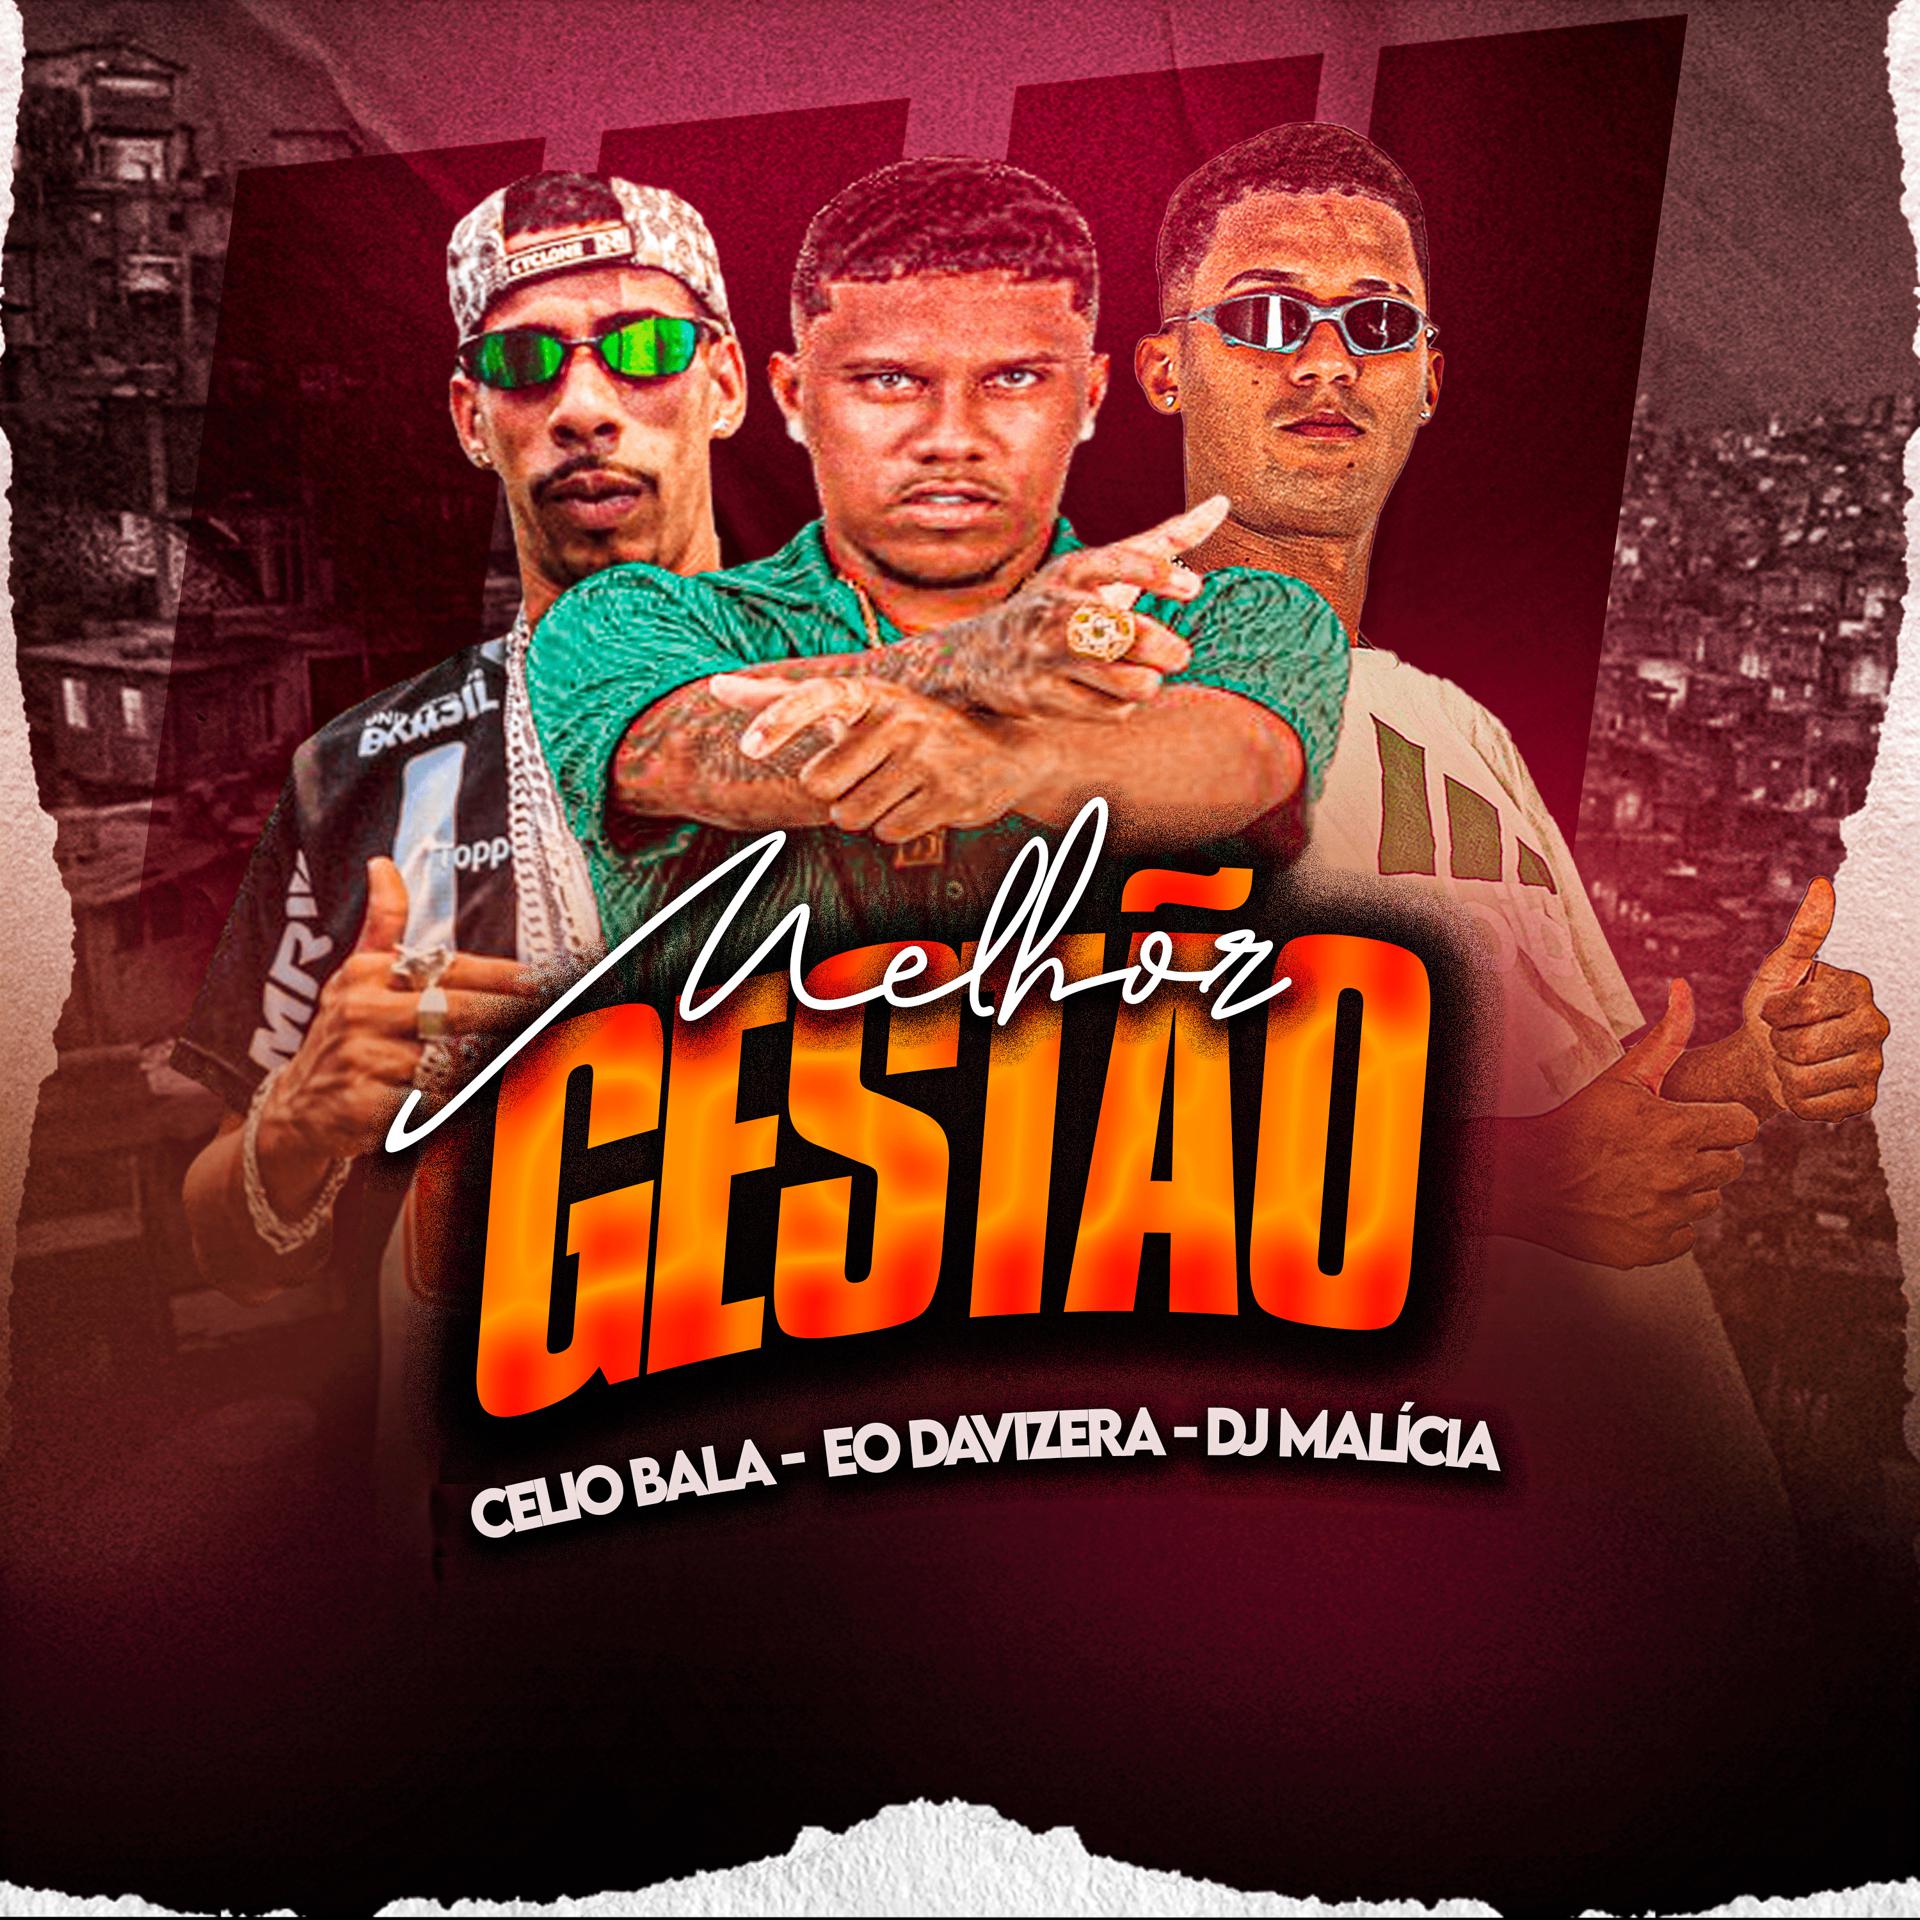 Постер альбома Melhor Gestão